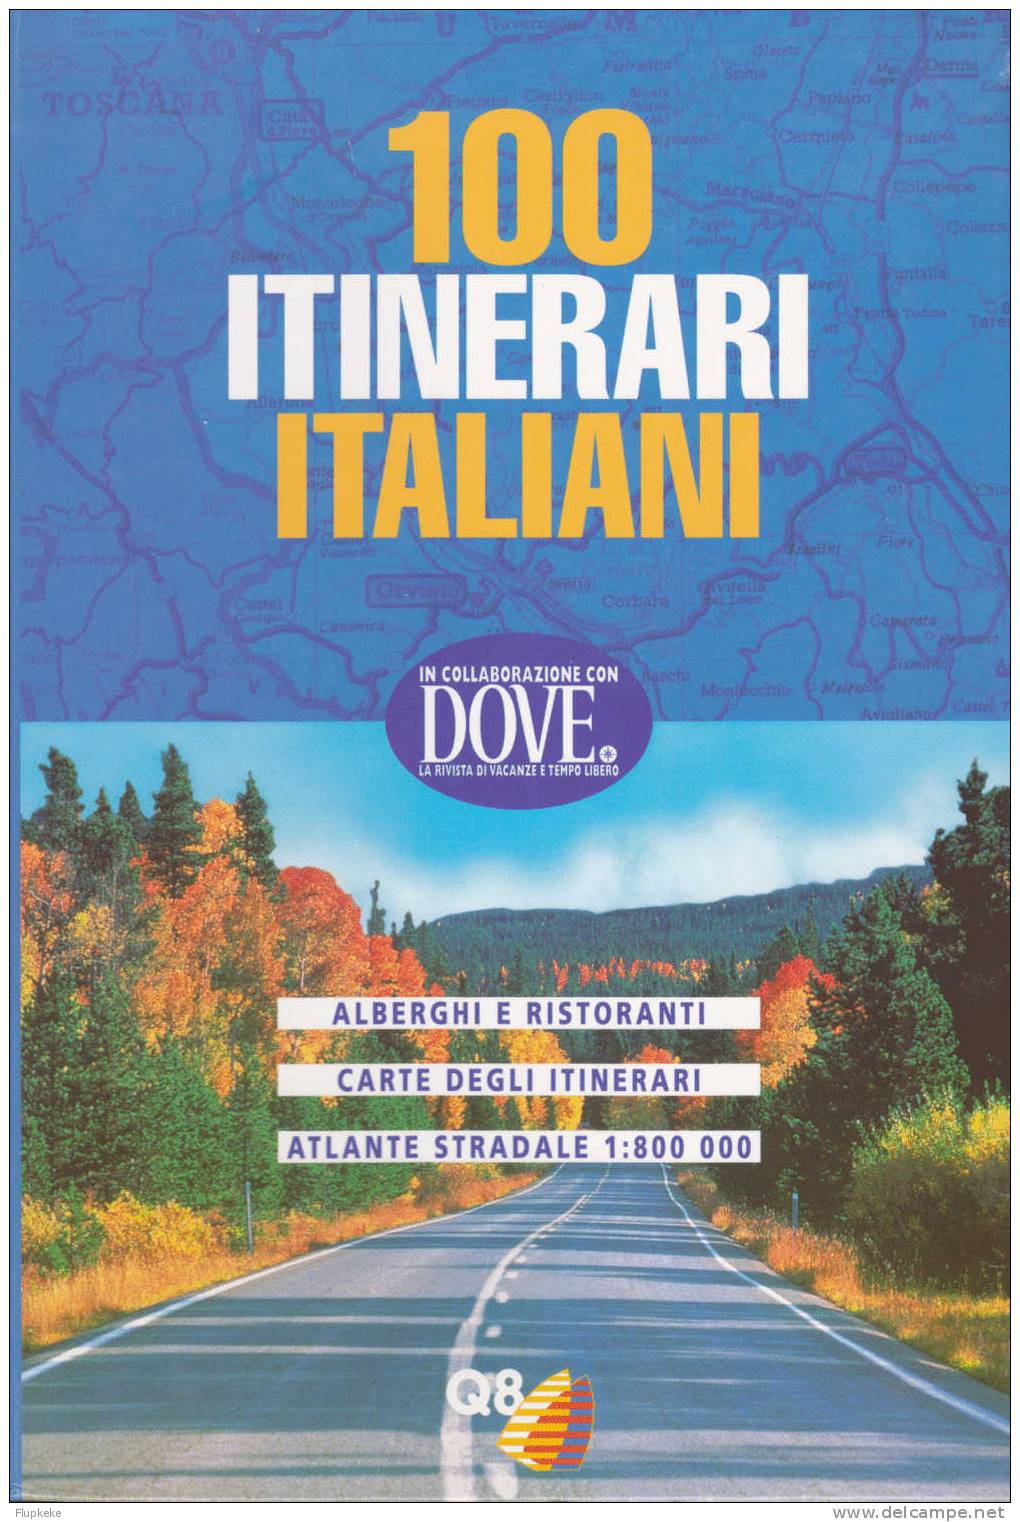 100 Itinerari Italiani Q8 Dove 1996 - Toerisme, Reizen